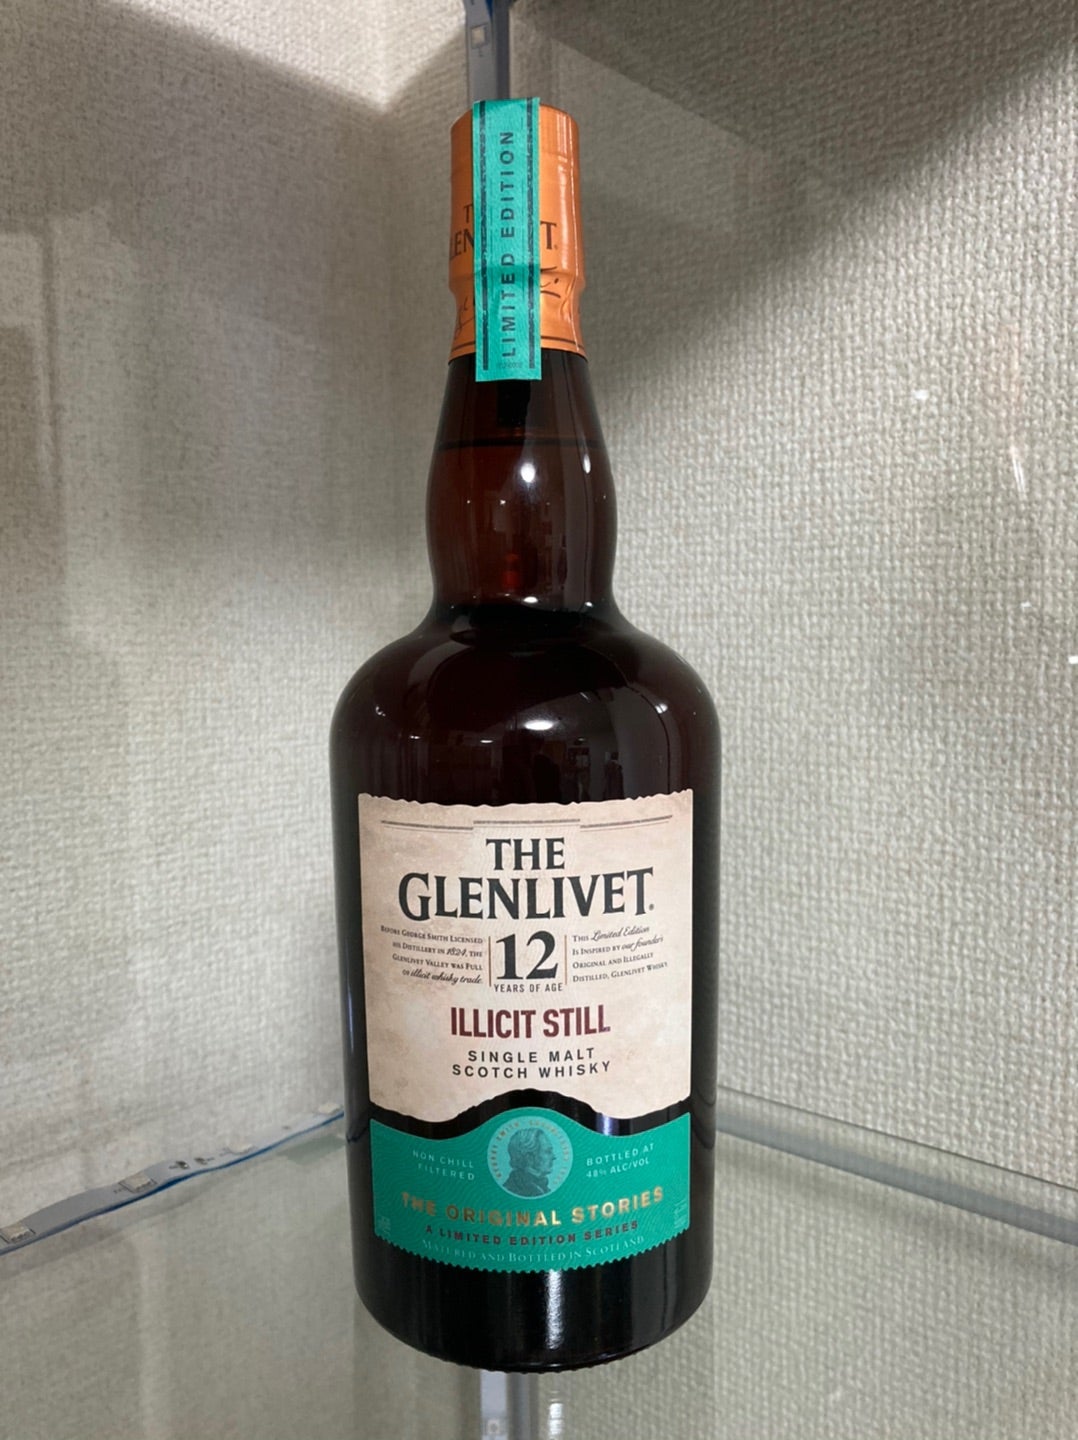 ザ・グレンリベット12年 イリシット・スティル | ウイスキーの備忘録